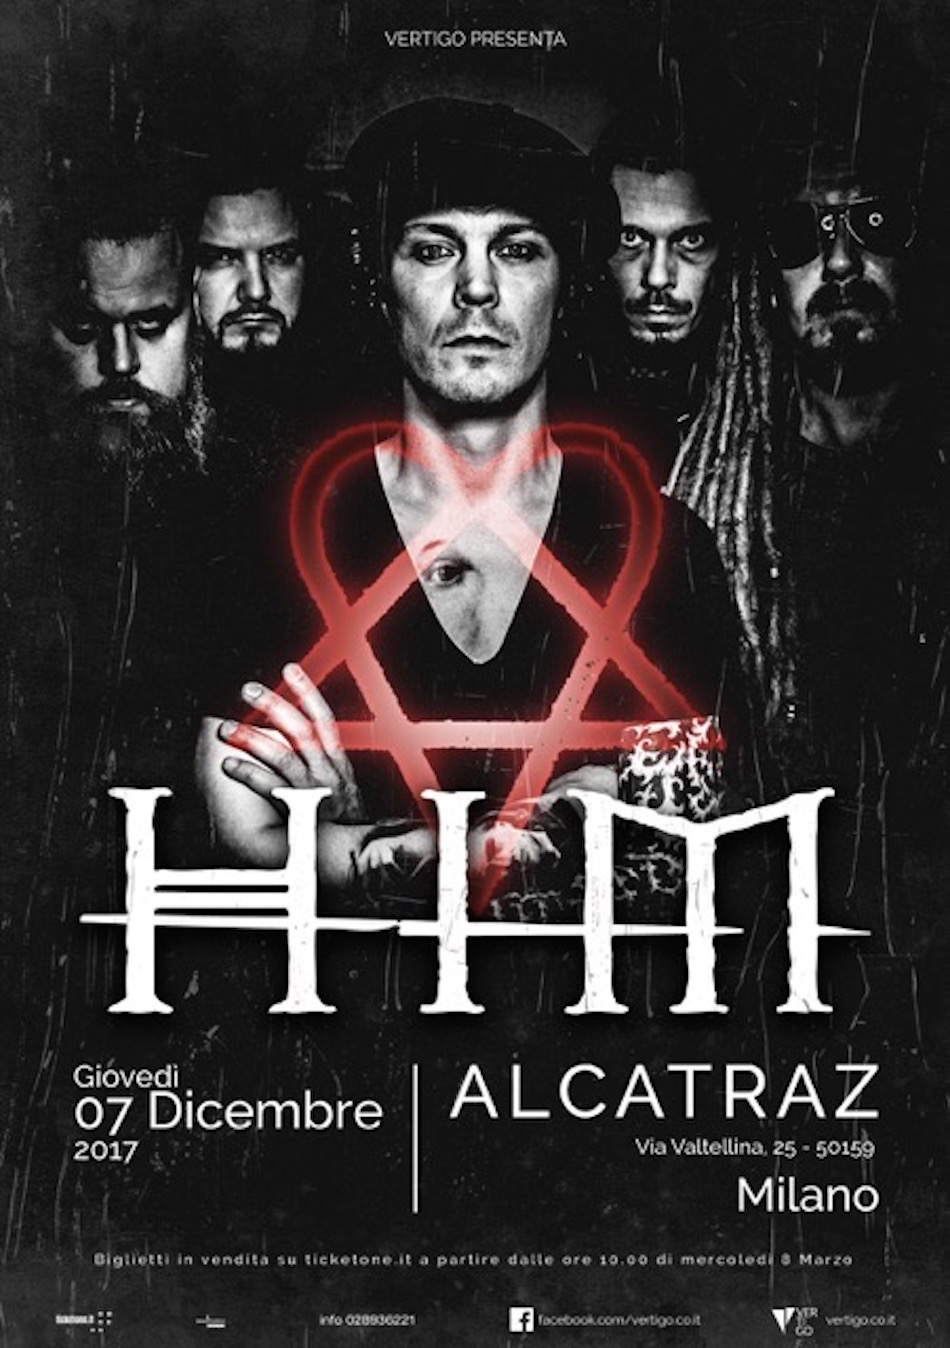 La locandina del tour finale degli Him, in Italia il 7 dicembre prossimo